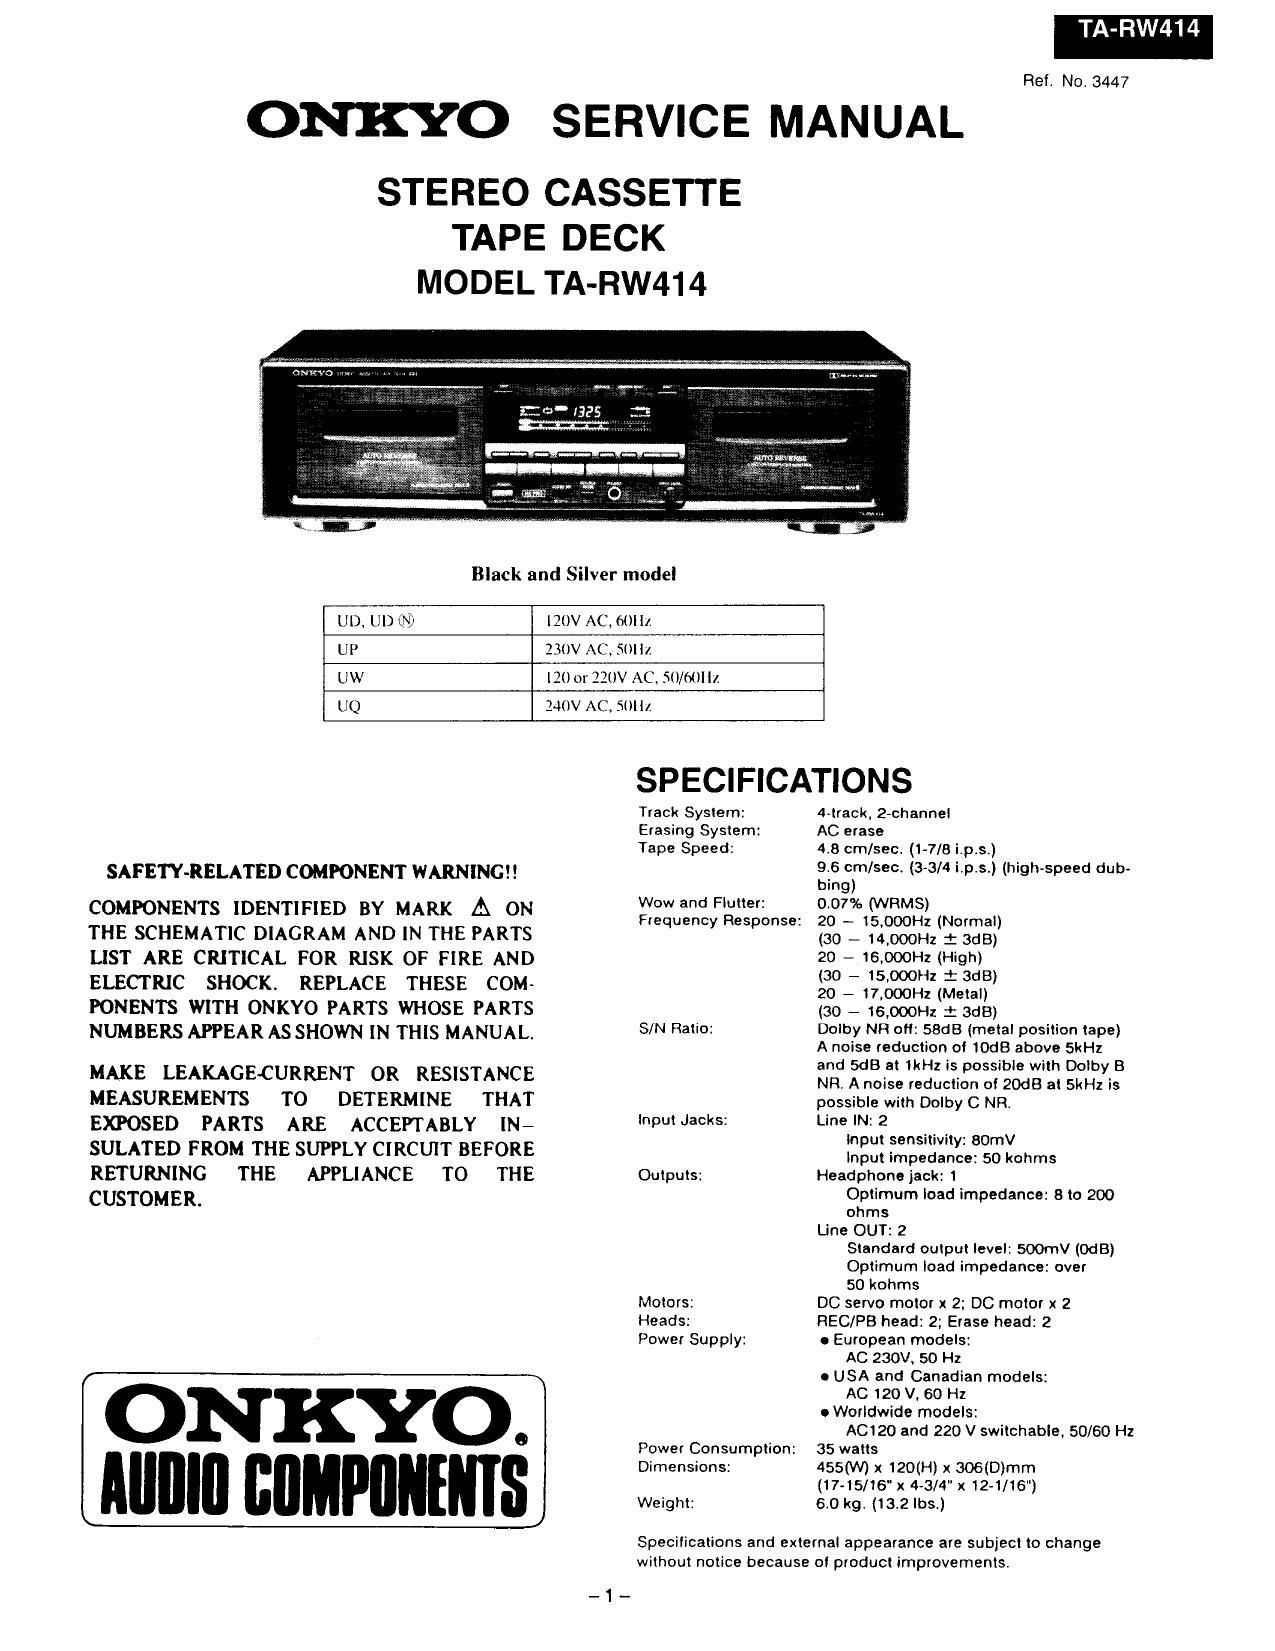 Onkyo TARW 414 Service Manual